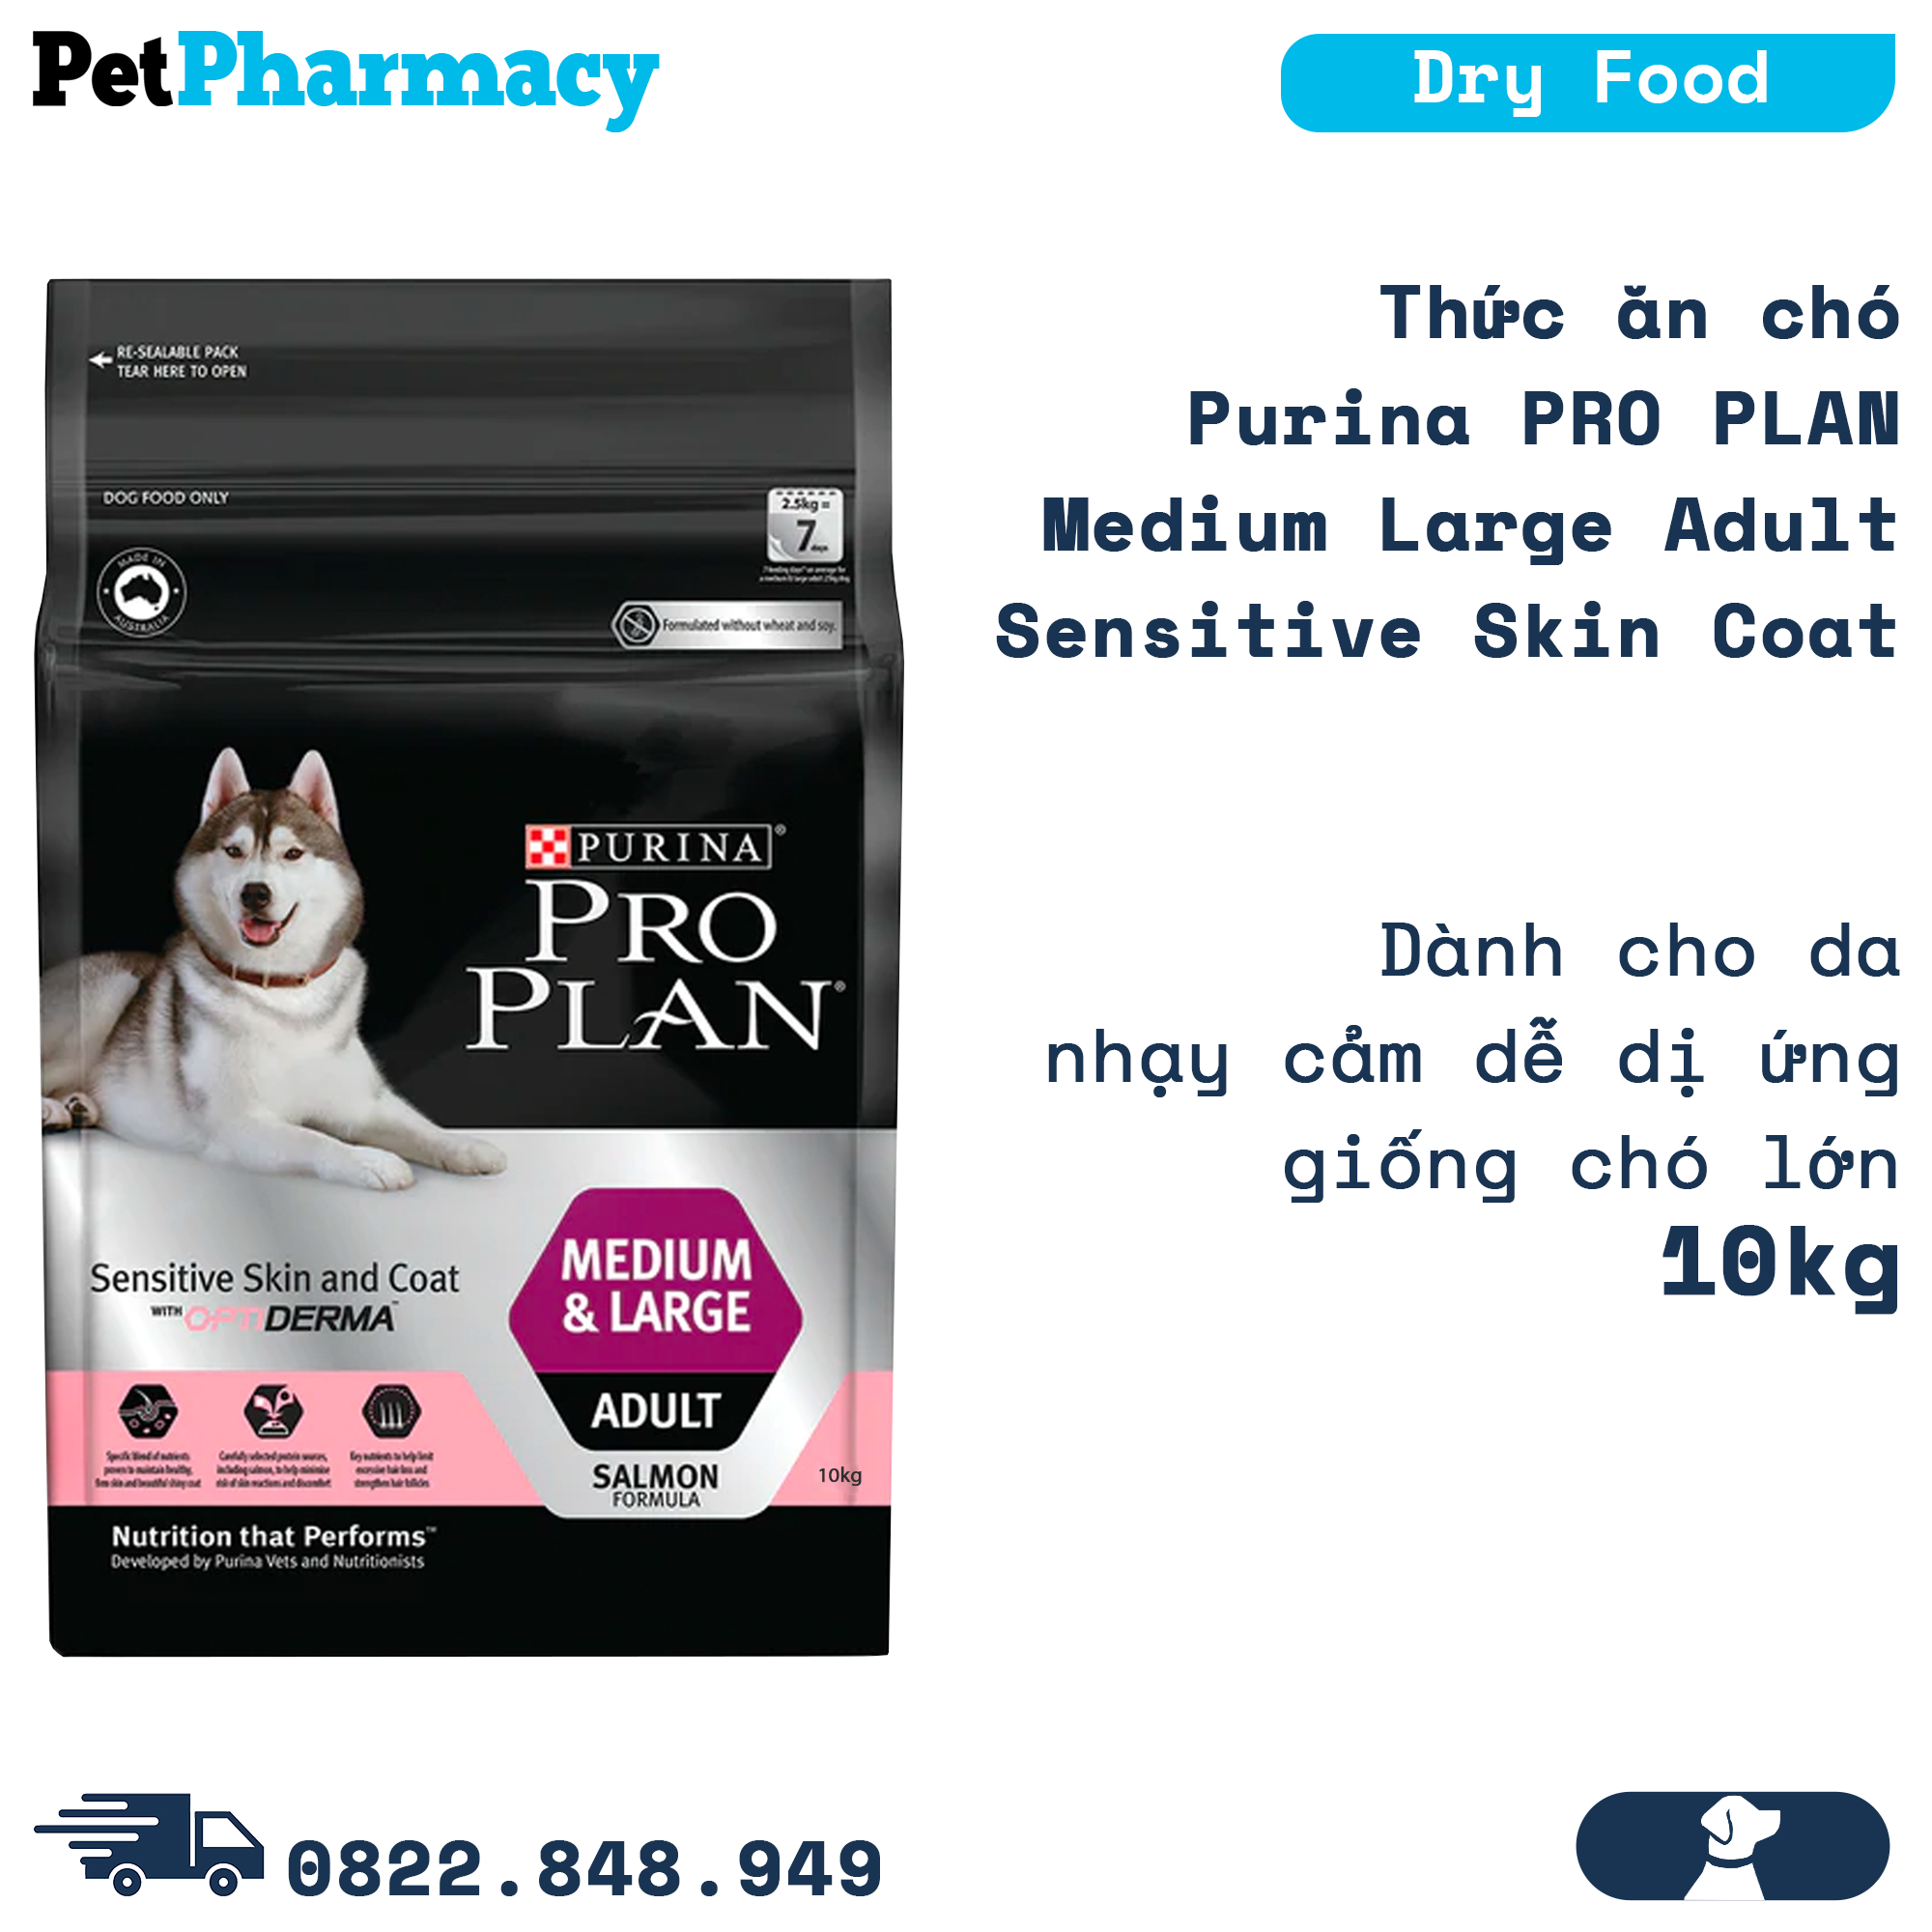  Thức ăn chó Purina PRO PLAN Medium Large Adult Sensitive Skin Coat 10kg - Dành cho da nhạy cảm dễ dị ứng giống chó lớn PetPharmacy 